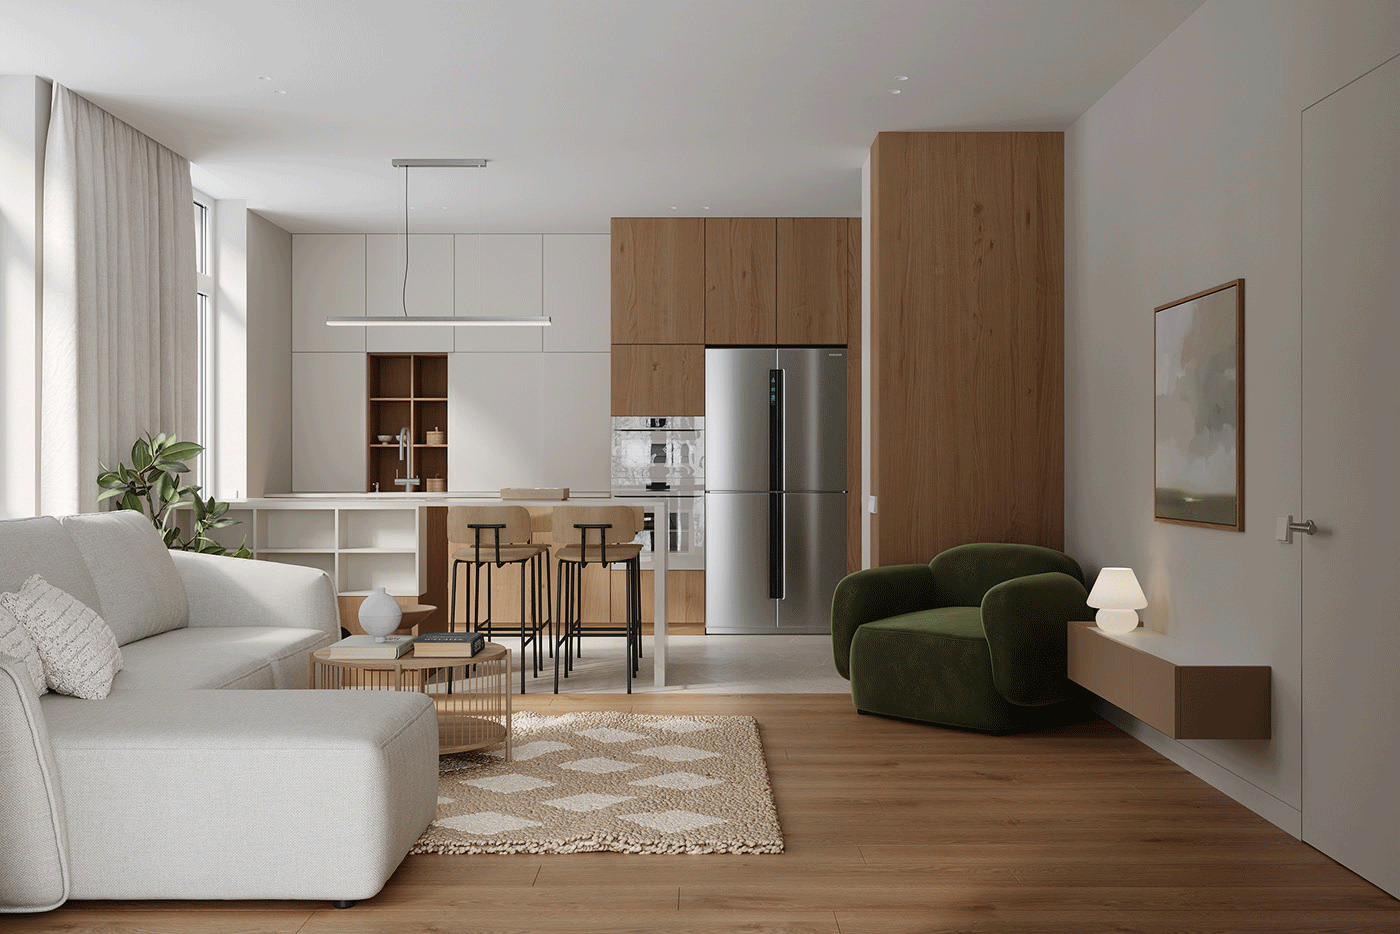 Mẫu thiết kế nội thất căn hộ chung cư phong cách hiện đại